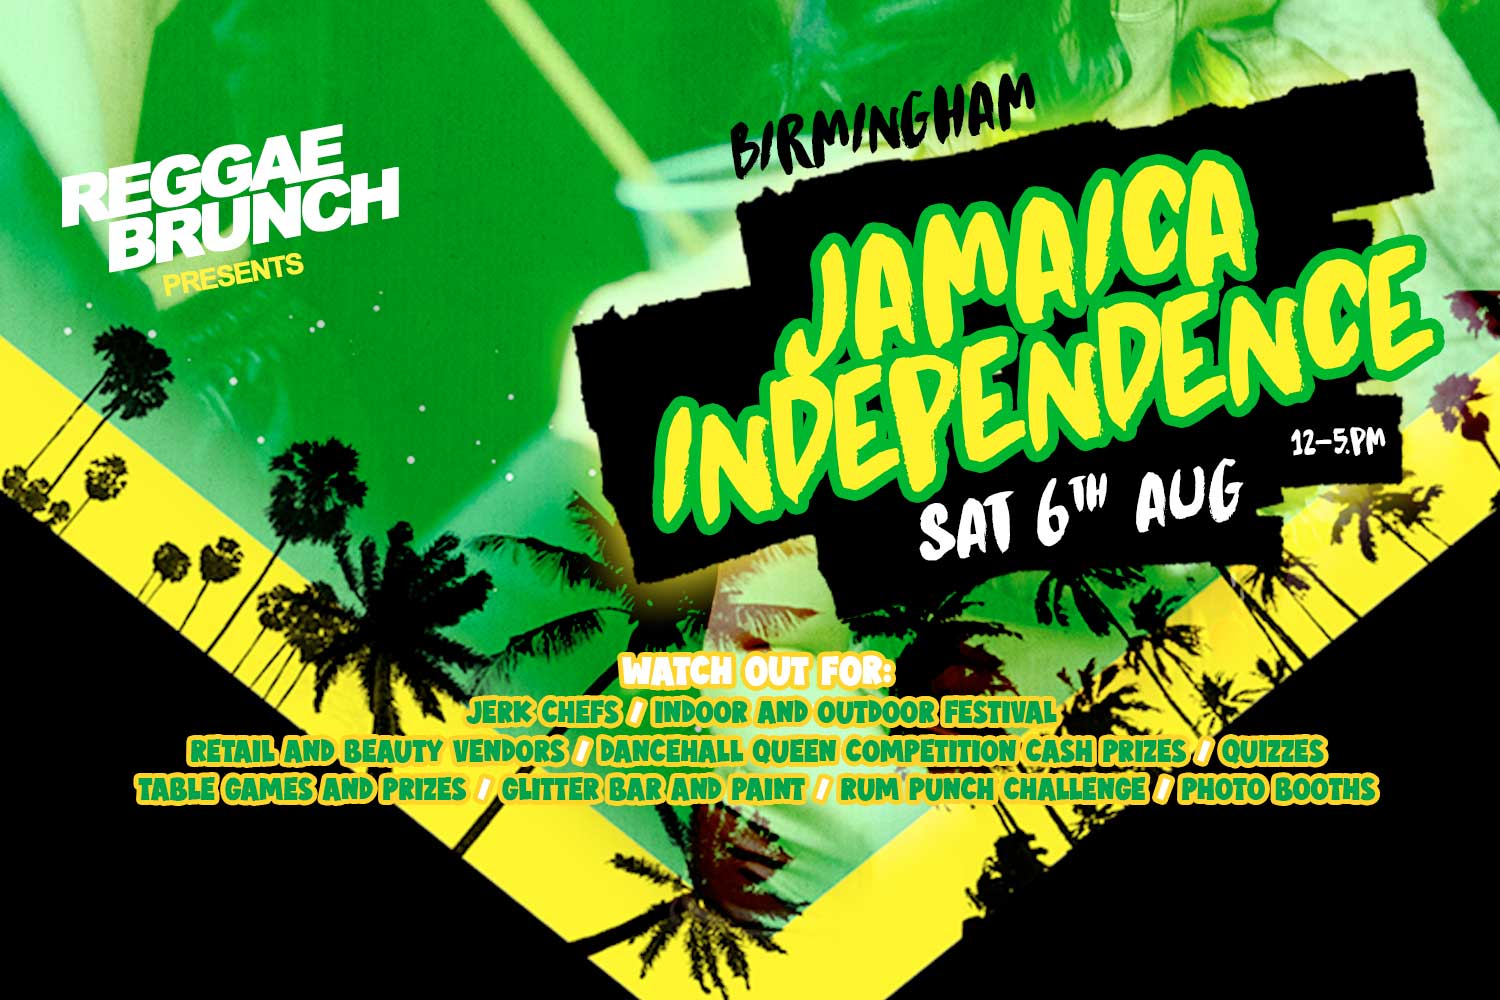 Sat, 6th Aug 2022 Jamaica Ind.